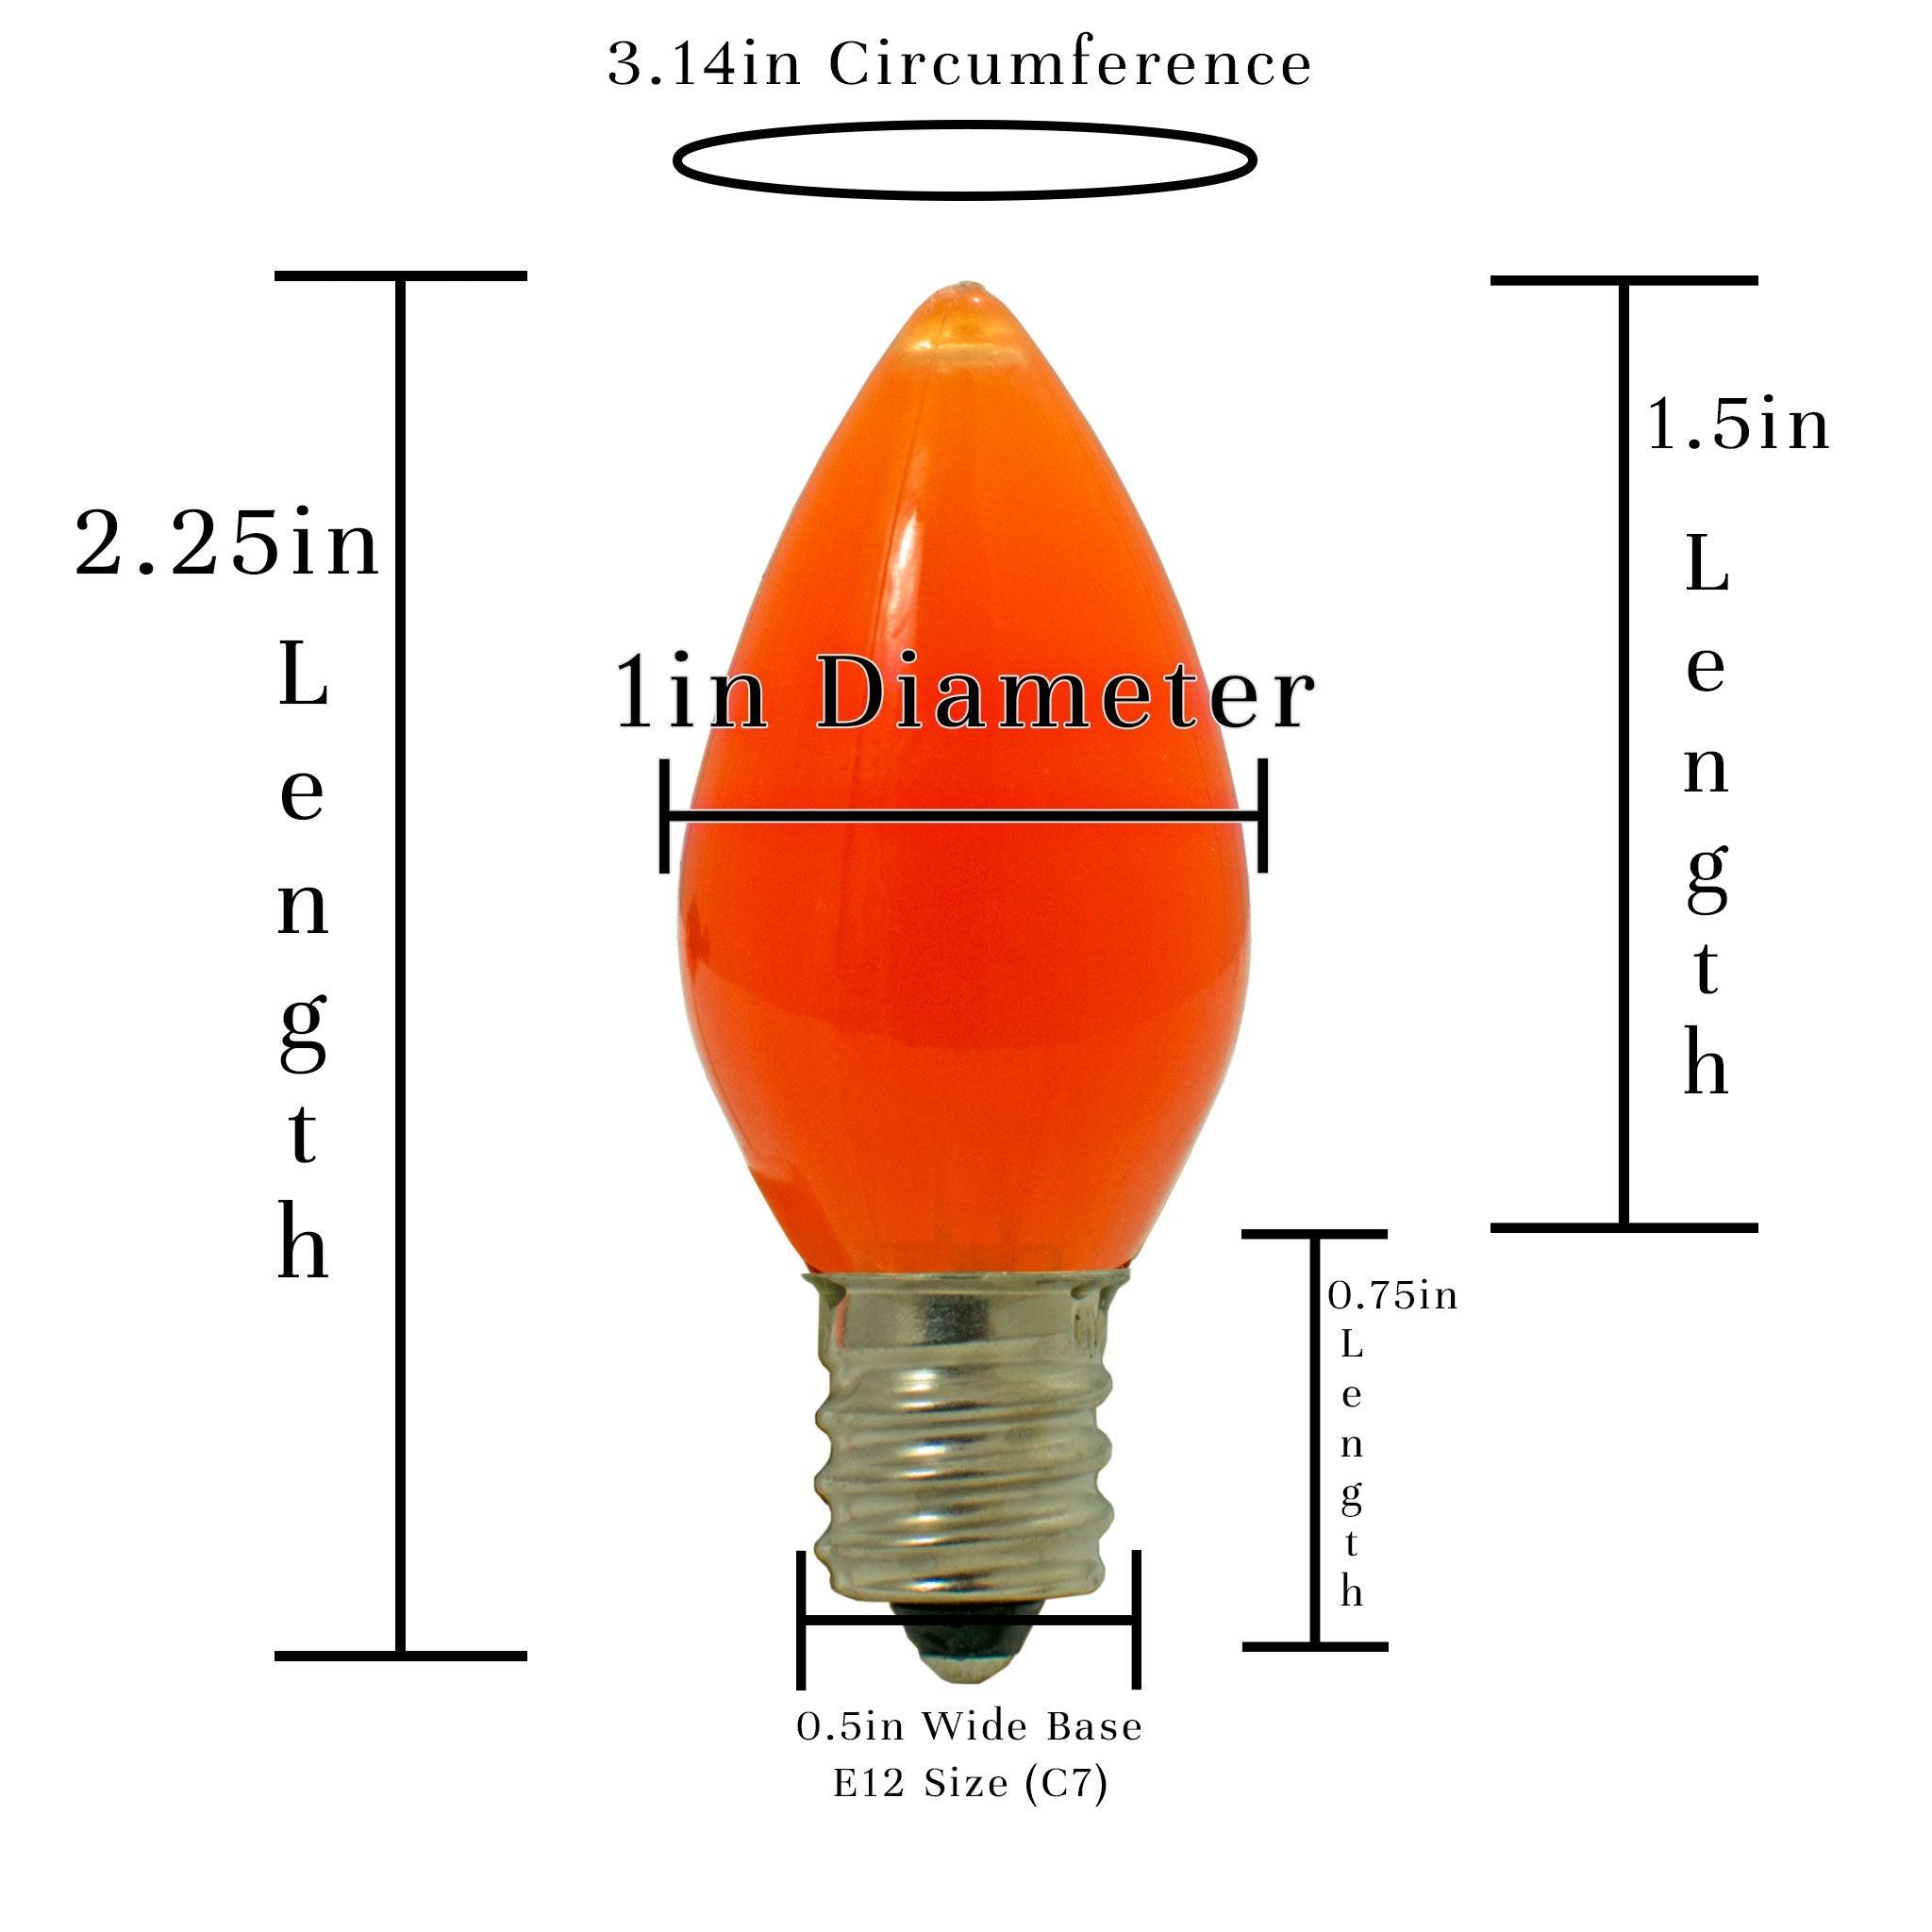 Orange Solid LED Light Bulbs